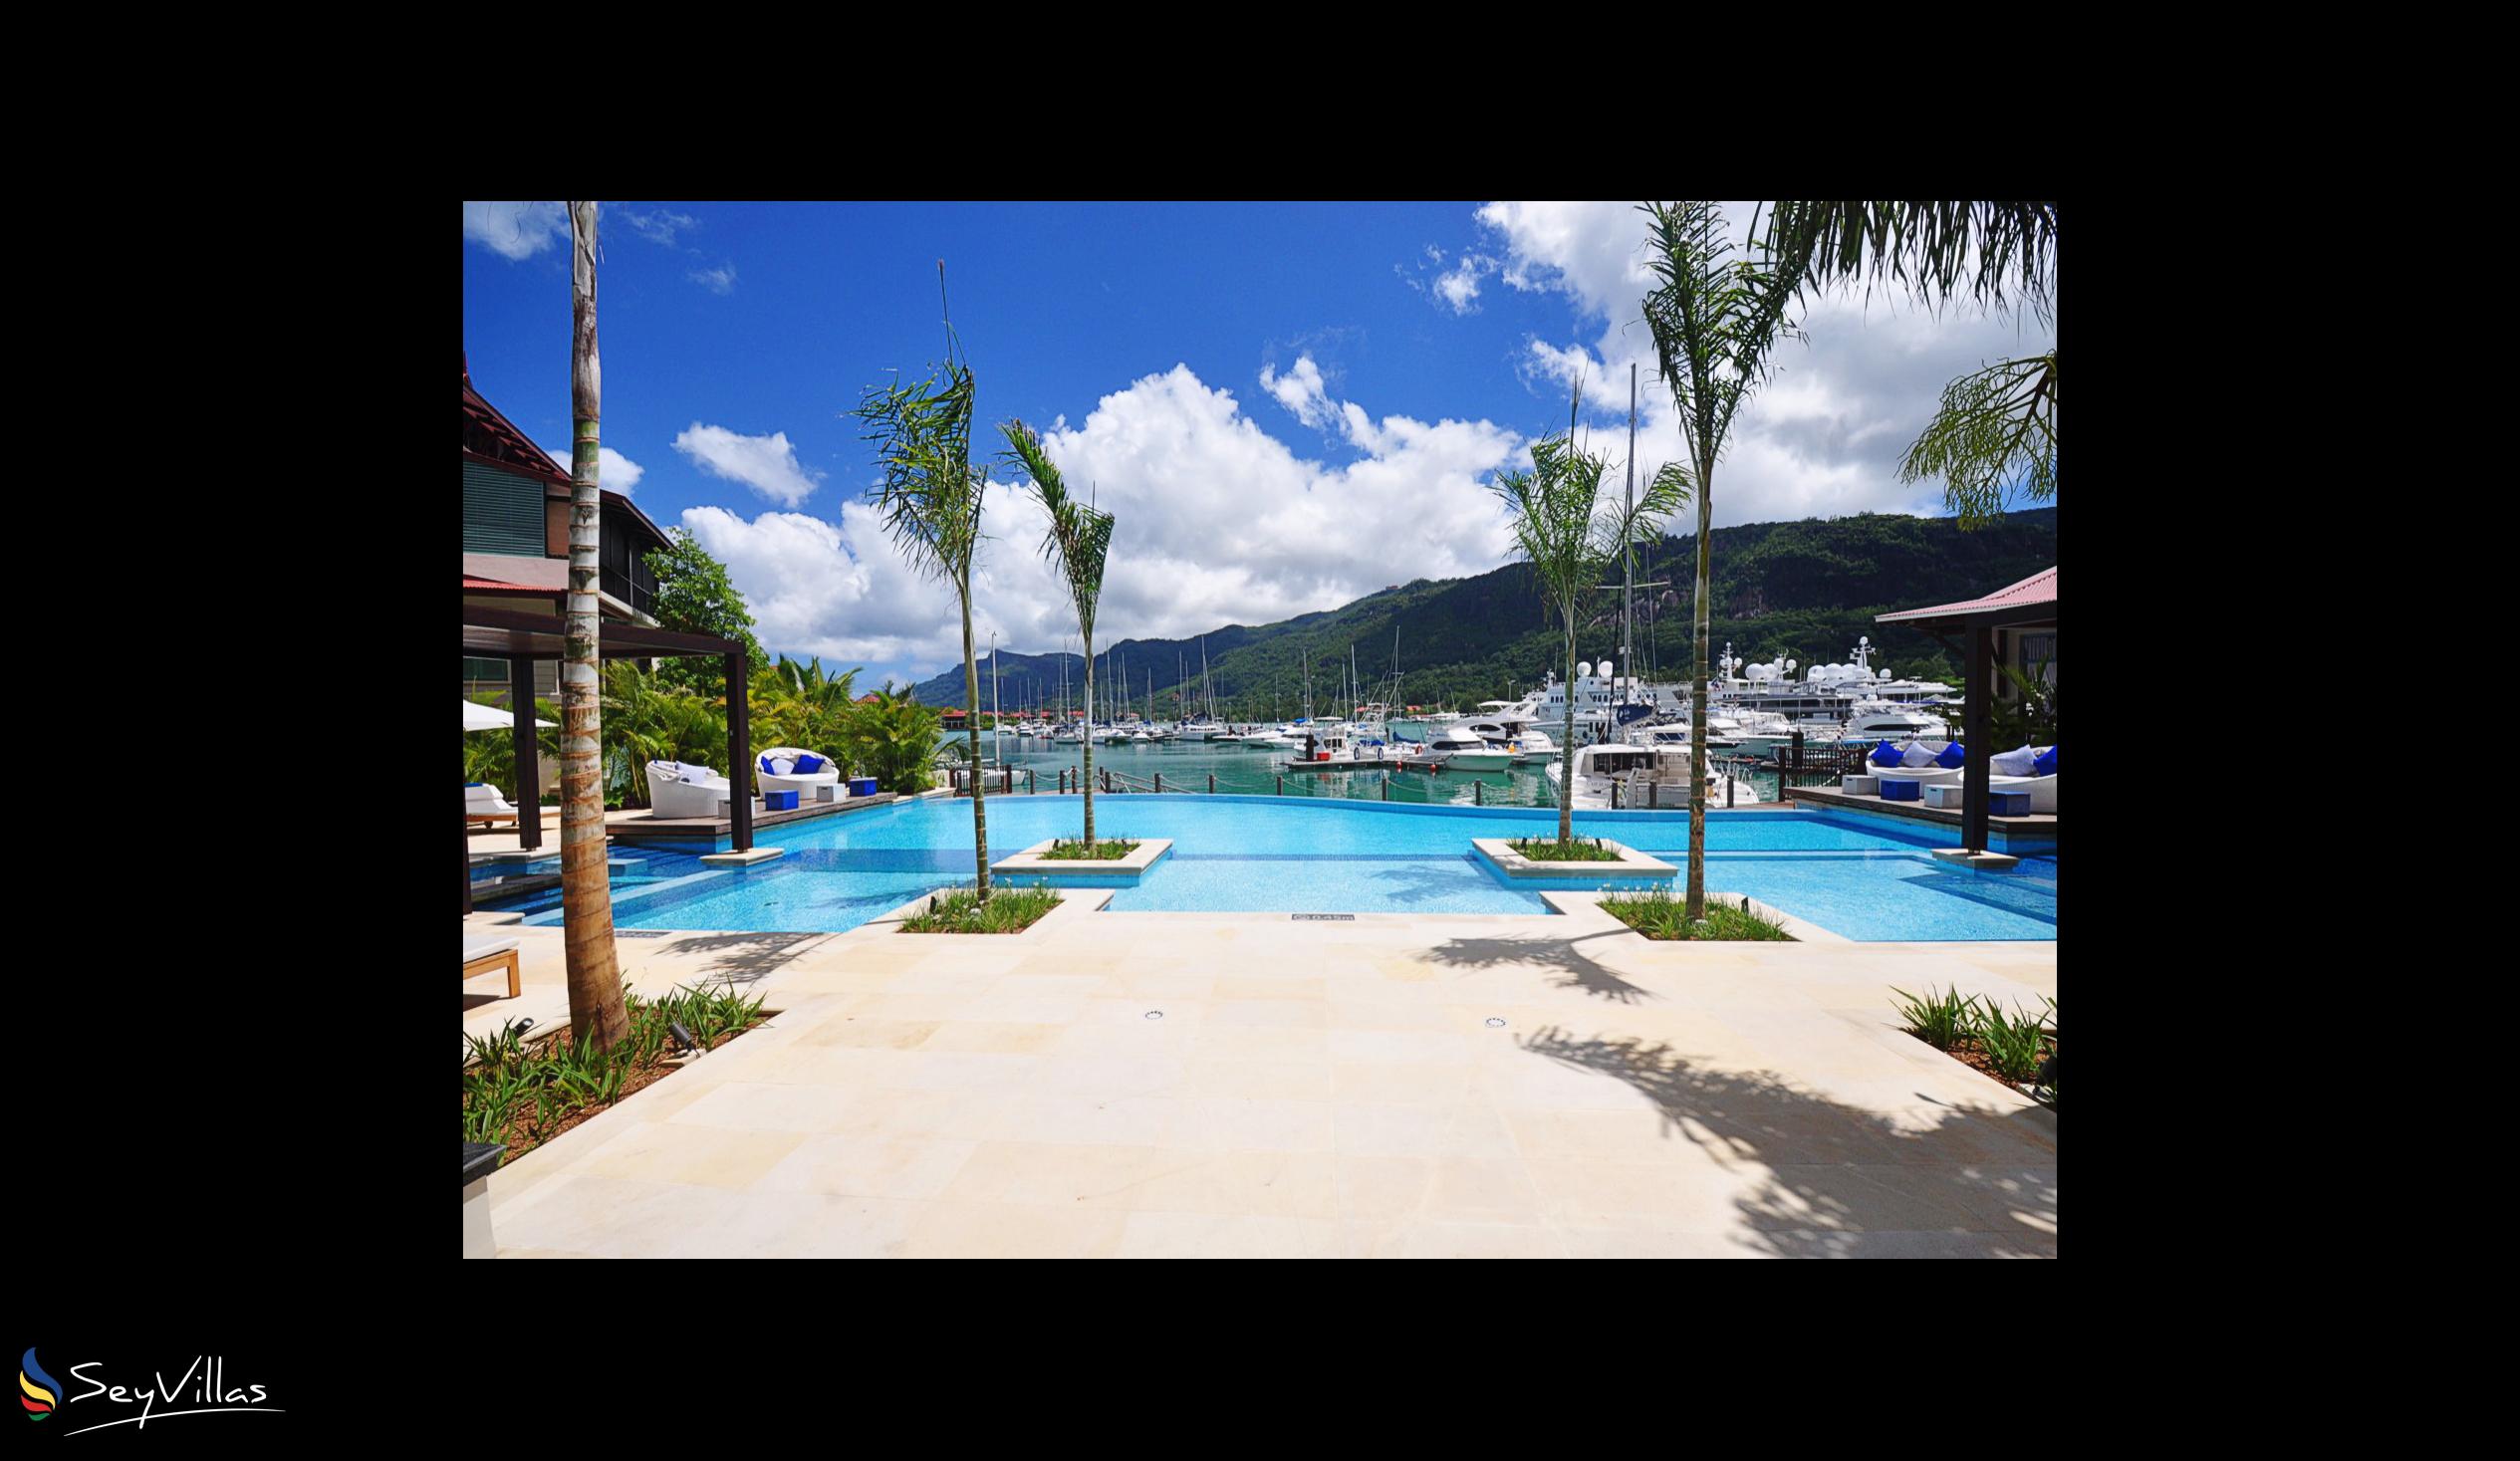 Photo 8: Eden Bleu Hotel - Outdoor area - Mahé (Seychelles)